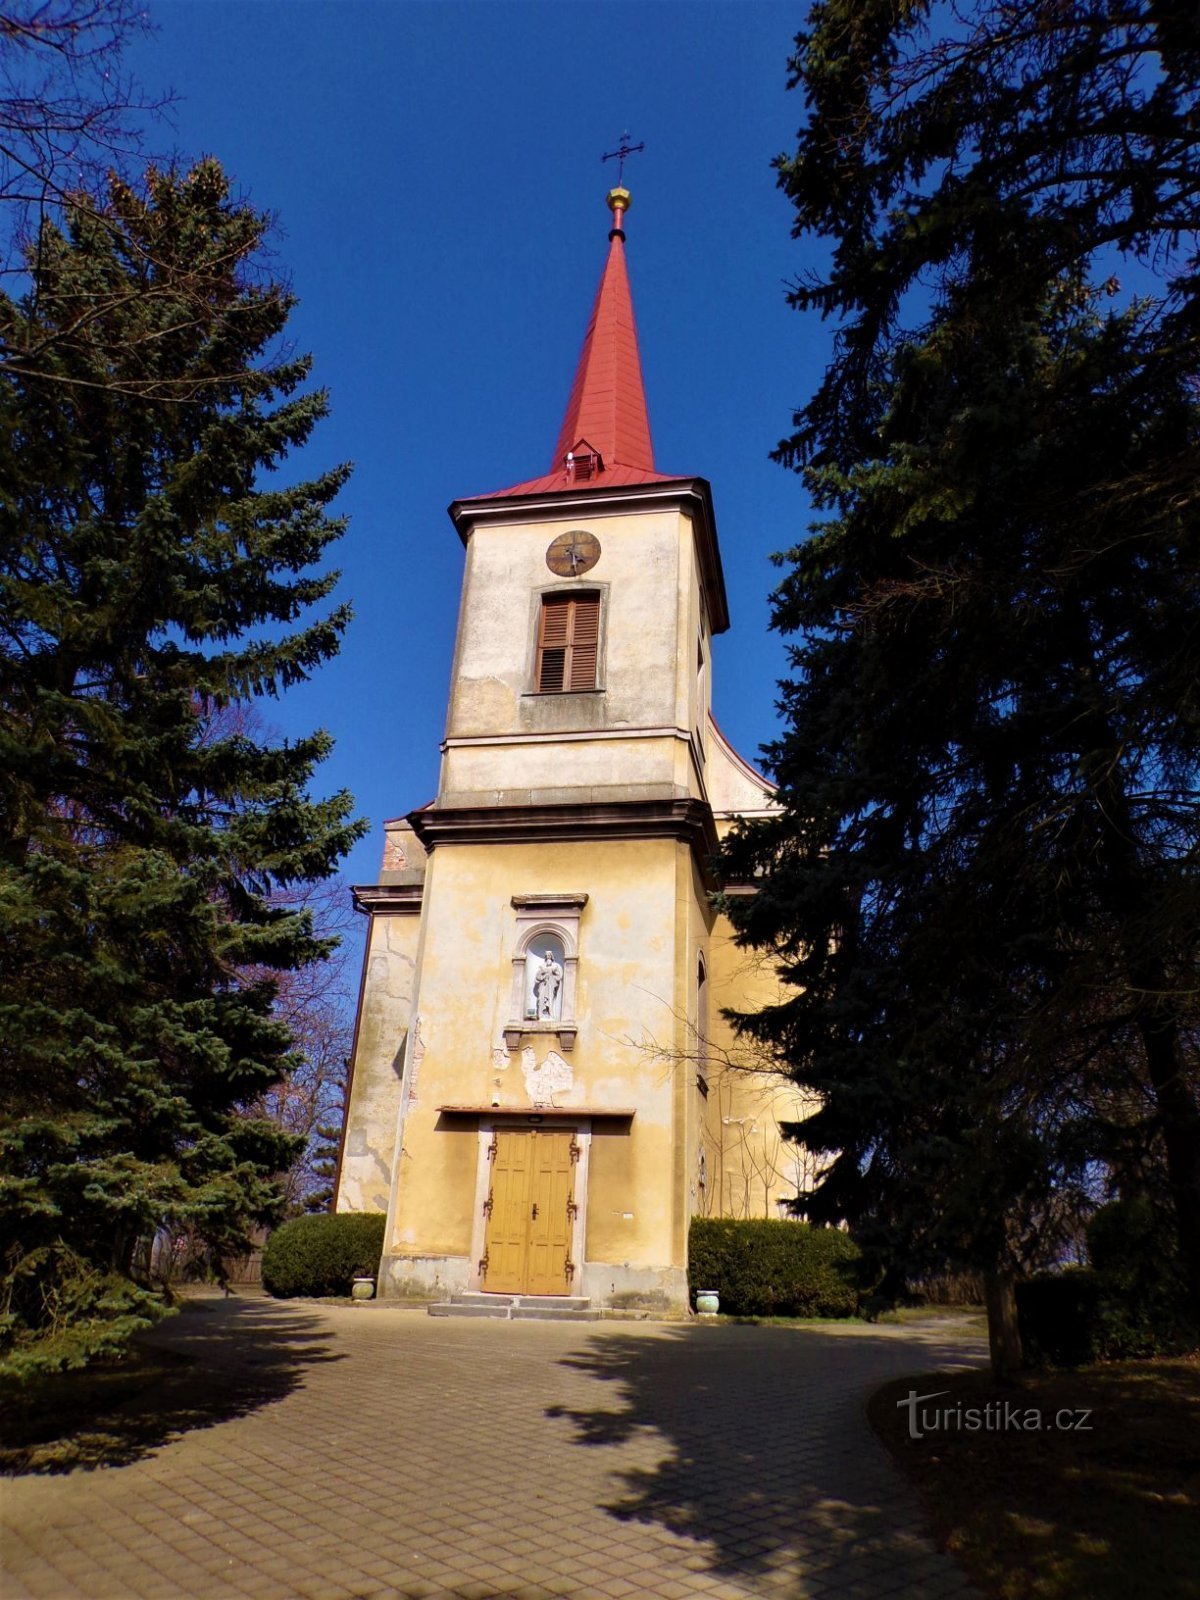 Cerkev sv. Štěpán (Černilov, 25.3.2021. julij XNUMX)